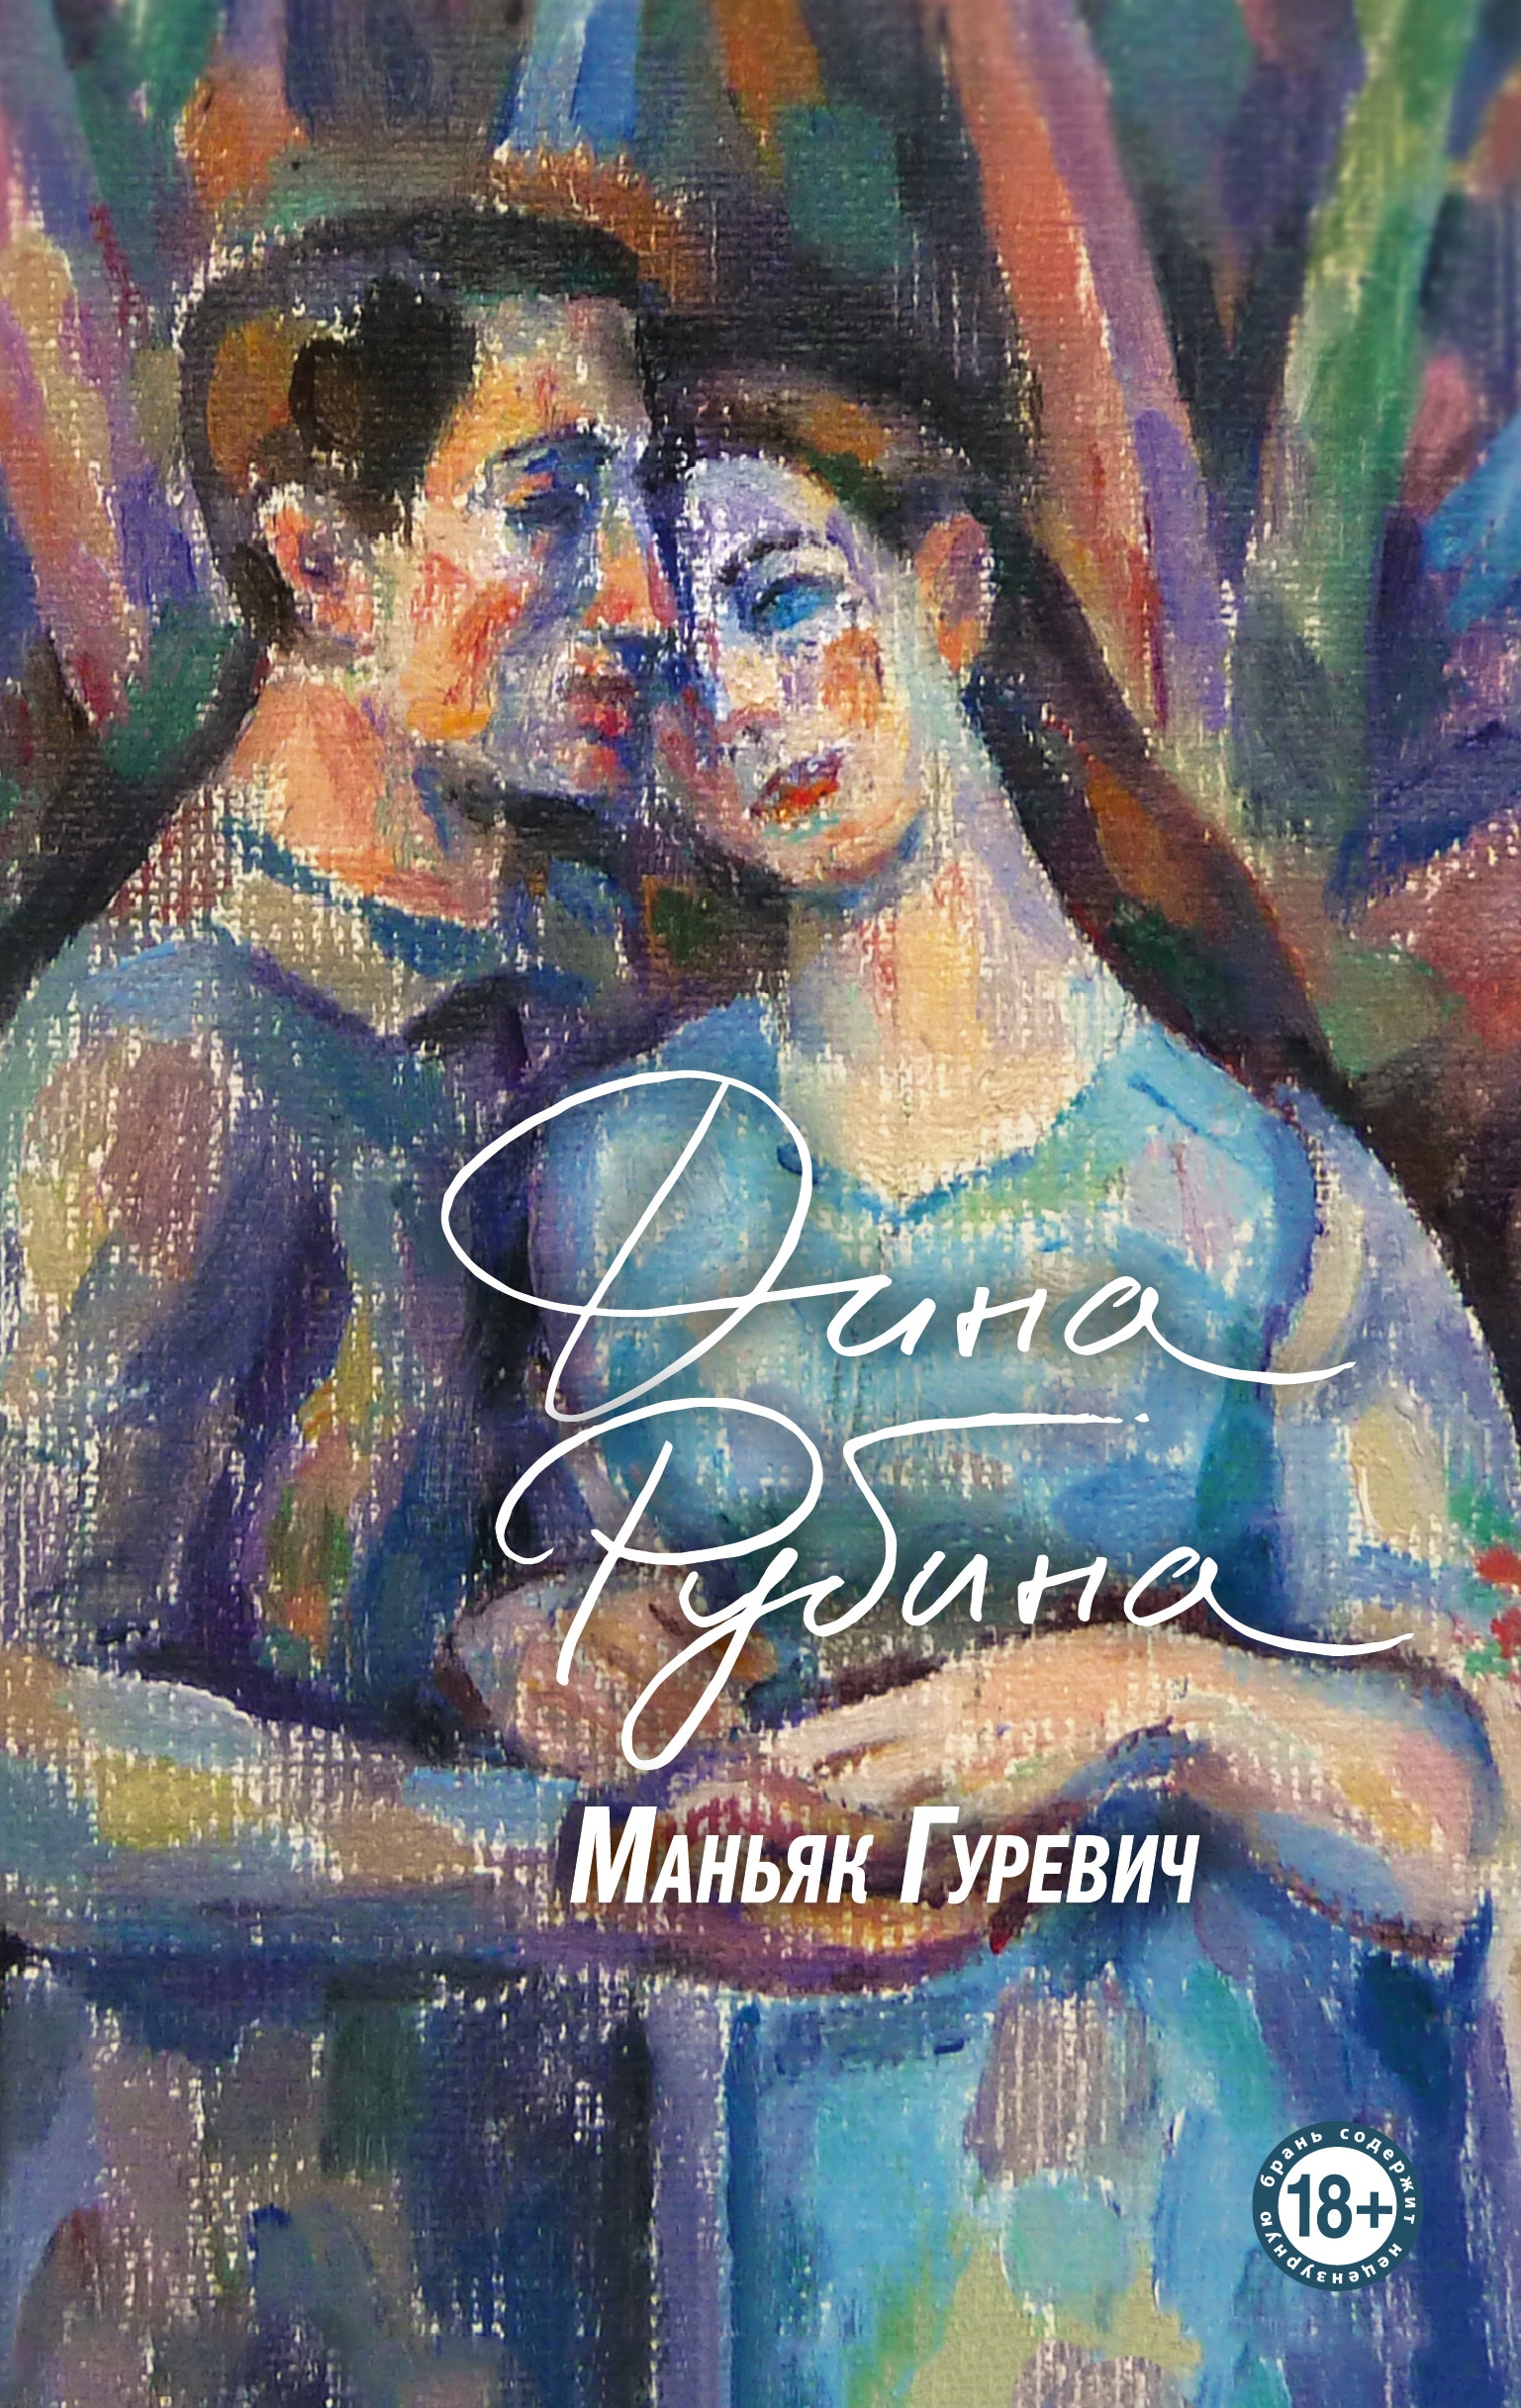 Book “Маньяк Гуревич” by Дина Рубина — November 29, 2021